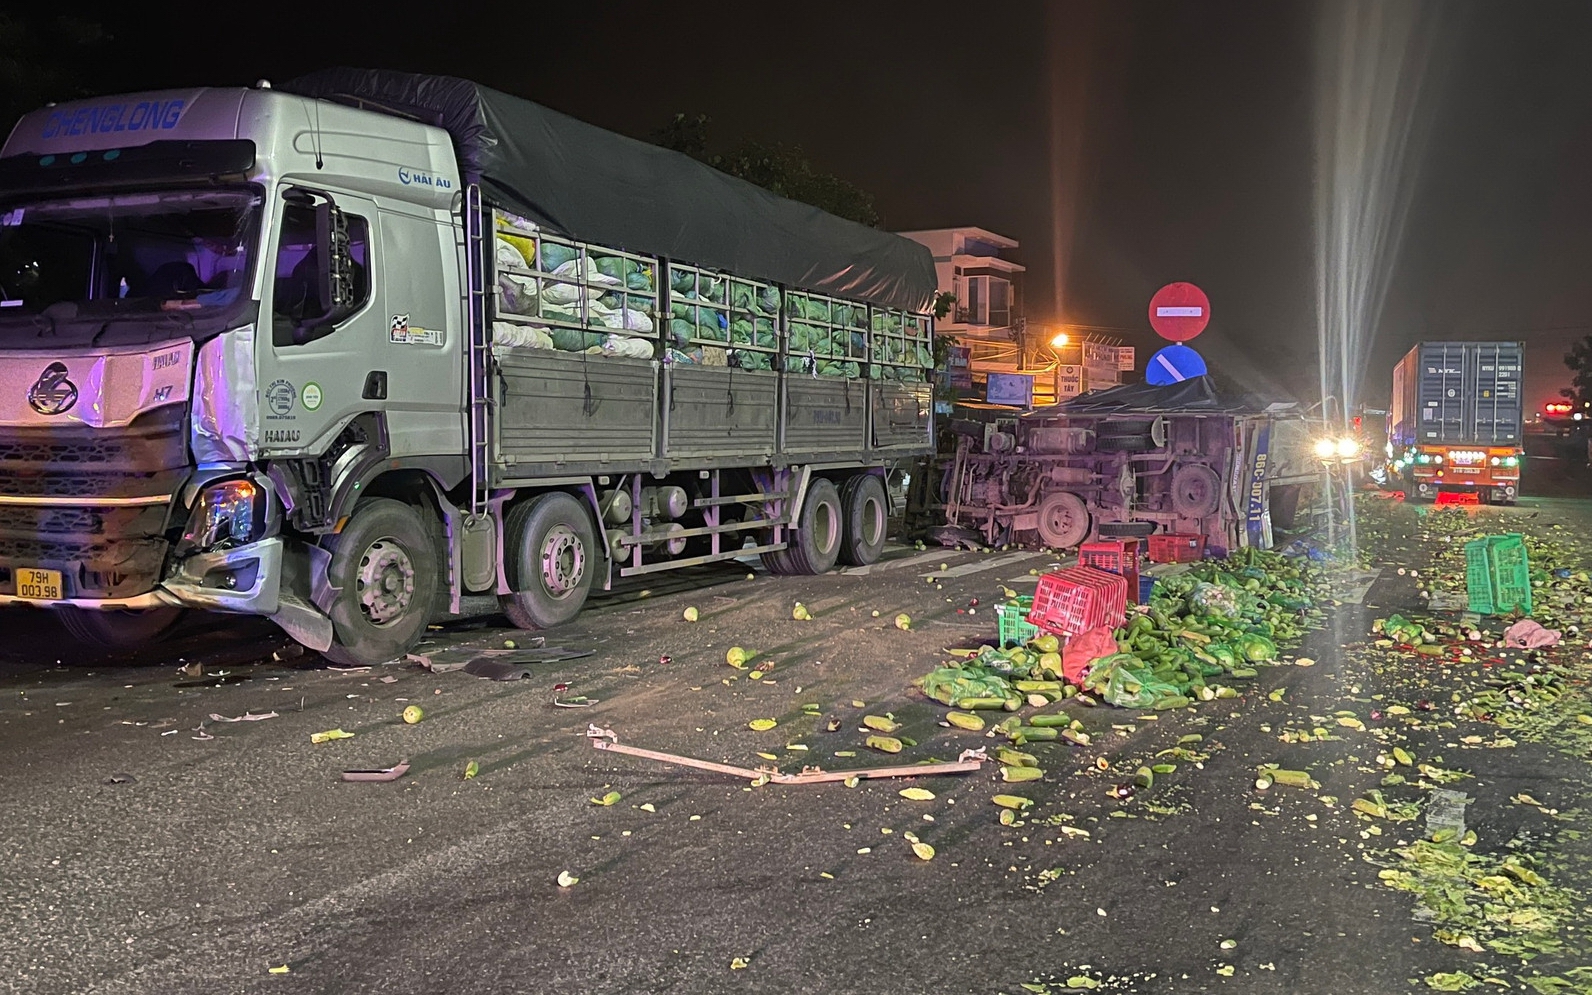 Bình Thuận: Tai nạn giao thông liên hoàn giữa 3 xe tải khiến vợ chết, chồng bị thương nặng